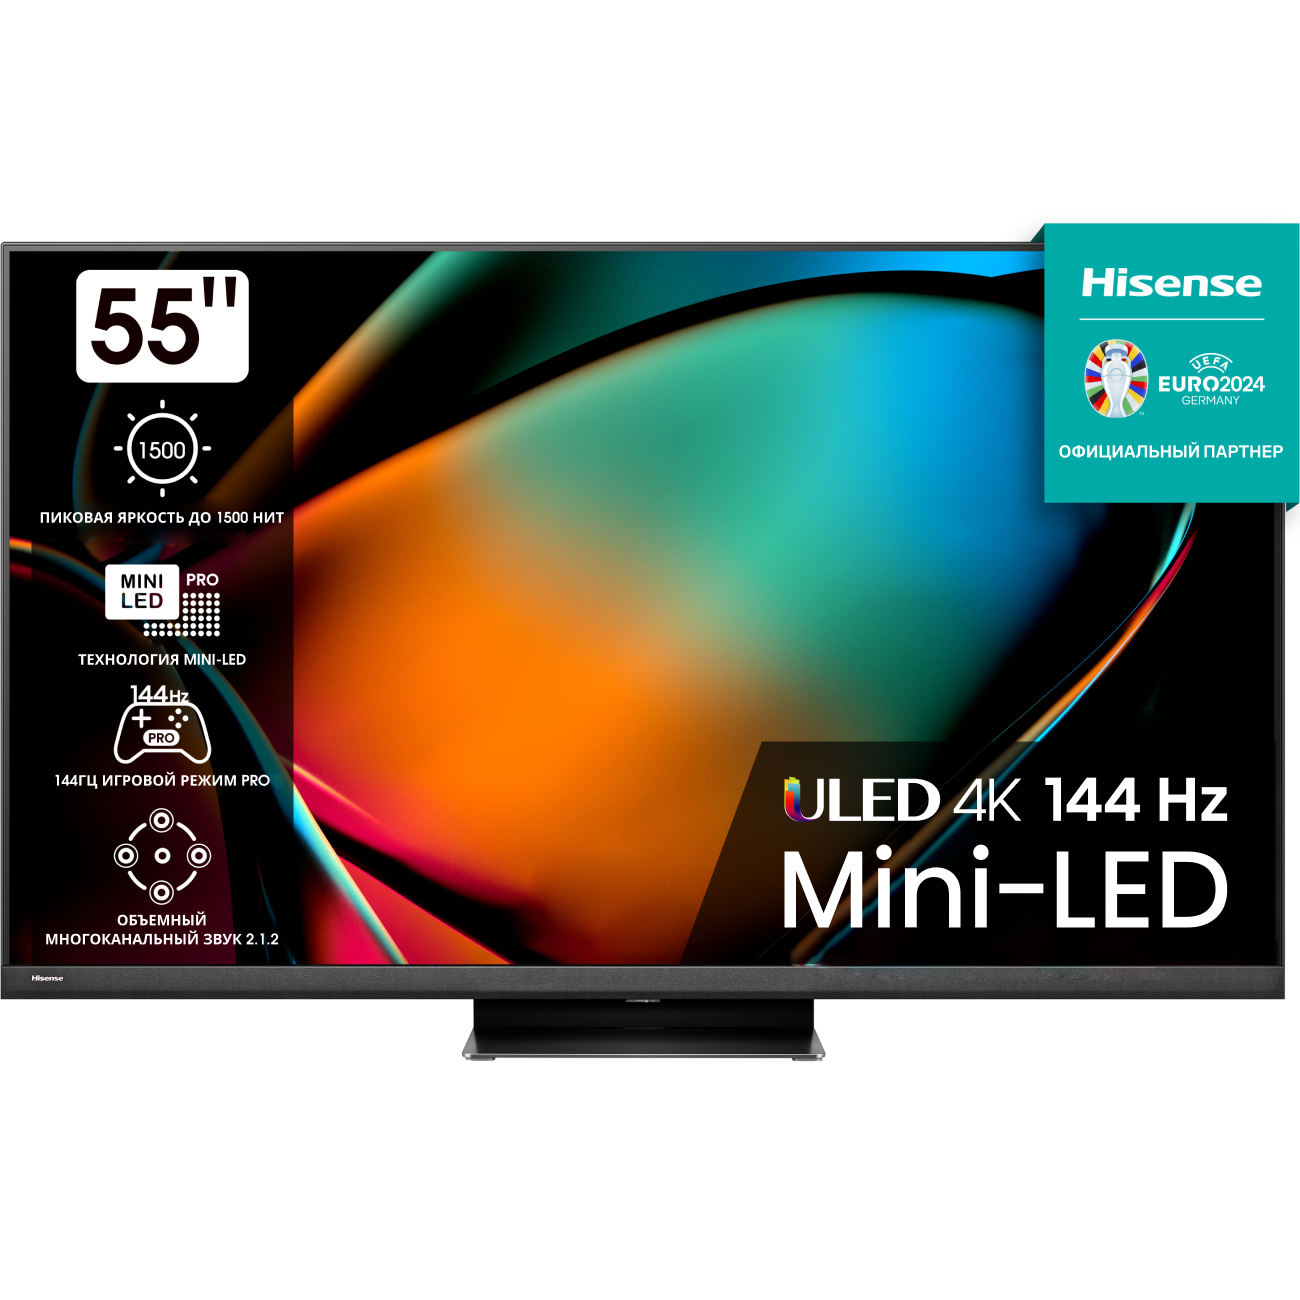 4K (Ultra HD) Smart телевизор Hisense 55u8hq (Имп), цвет серый 543368 55u8hq (Имп) - фото 1